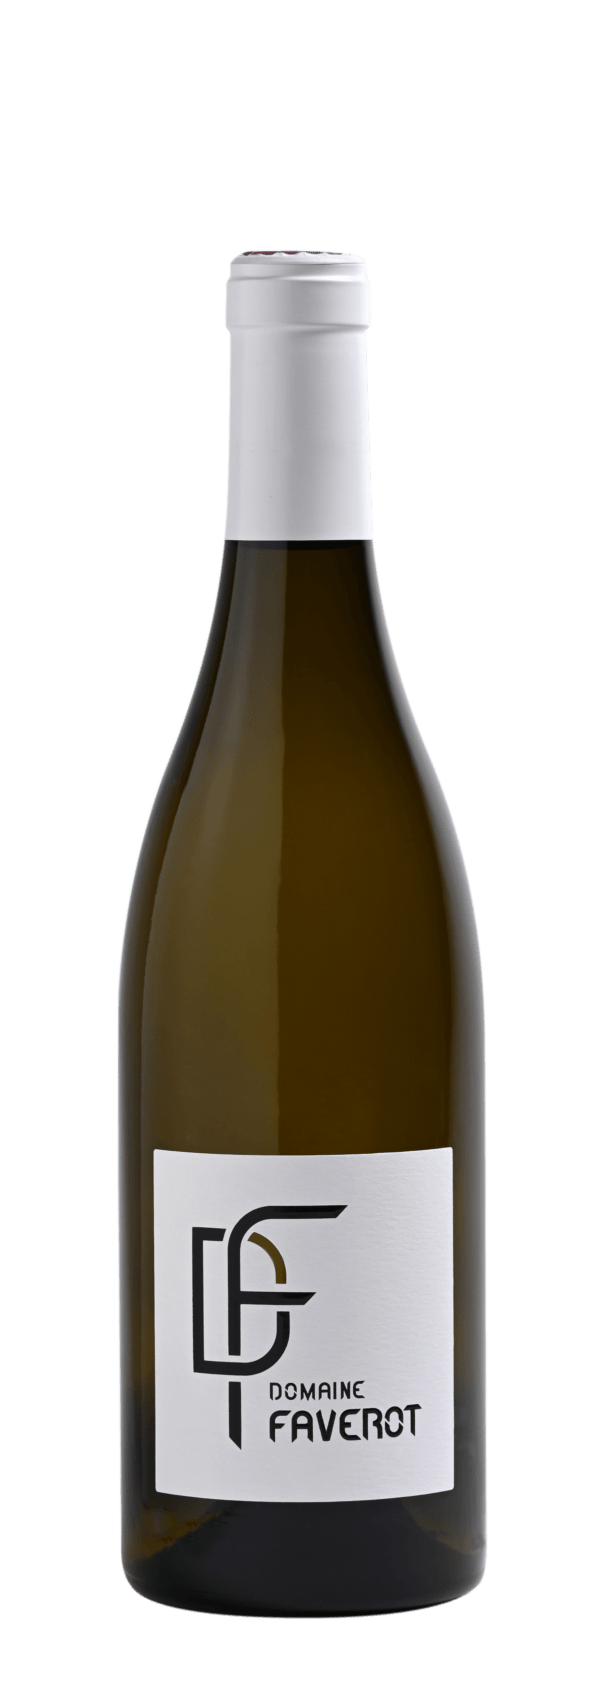 Bouteille de vin blanc Domaine Faverot